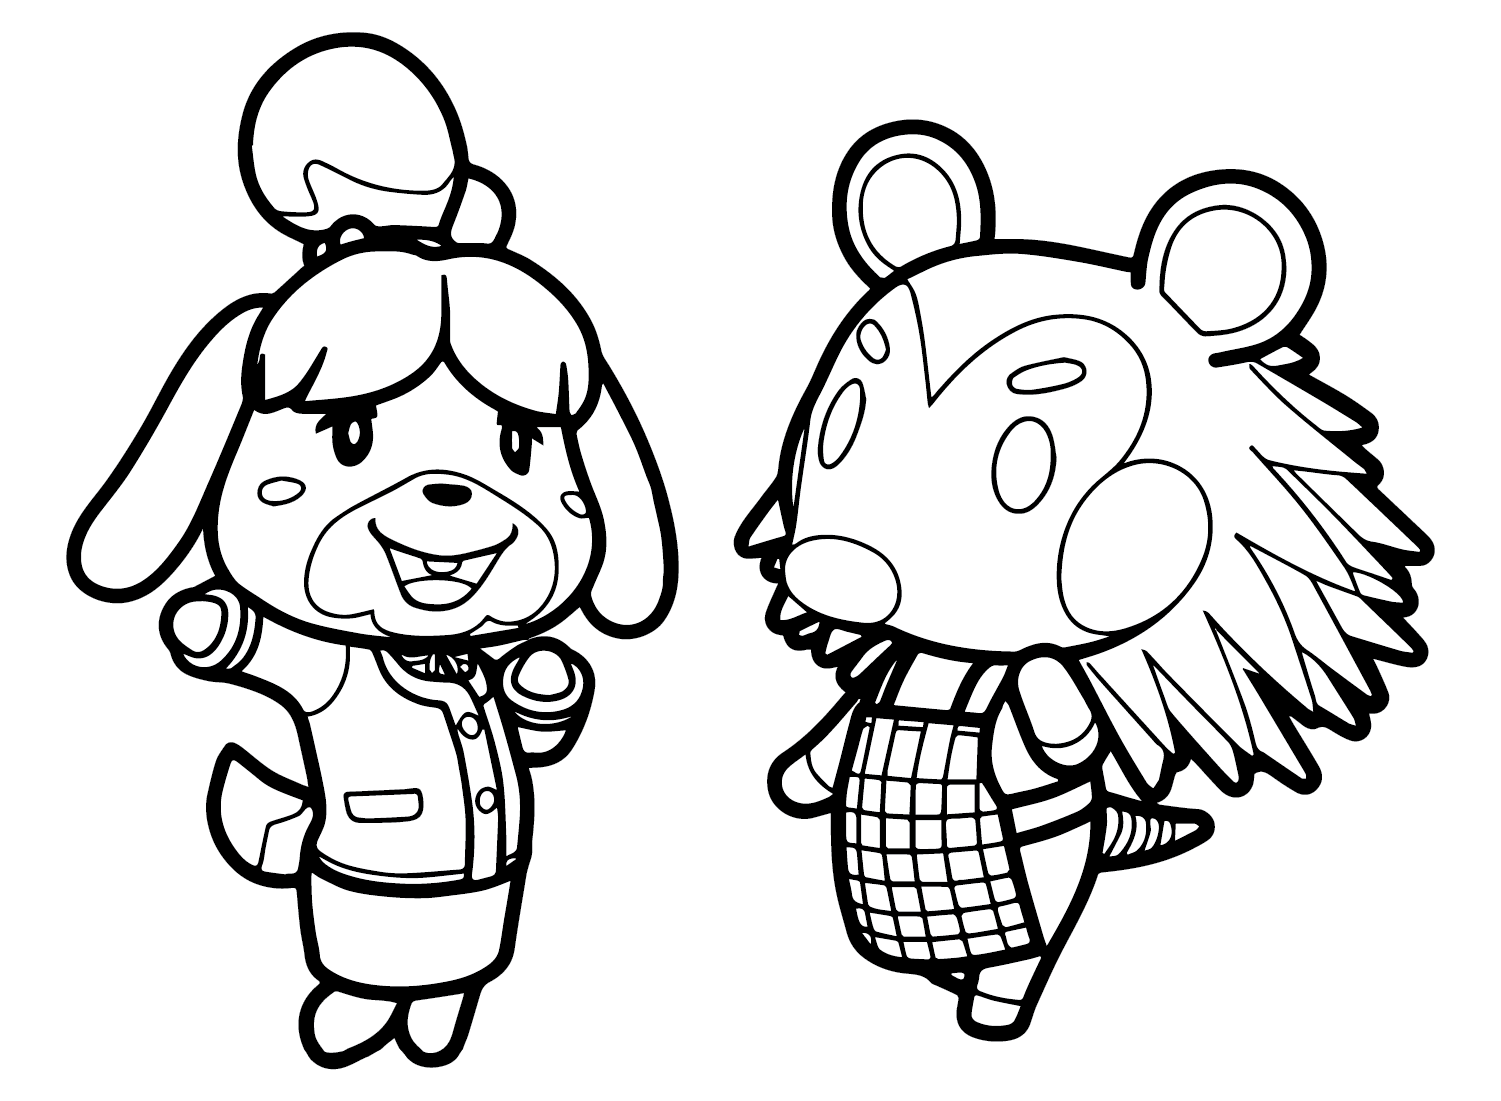 لابيل وإيزابيل من Animal Crossing